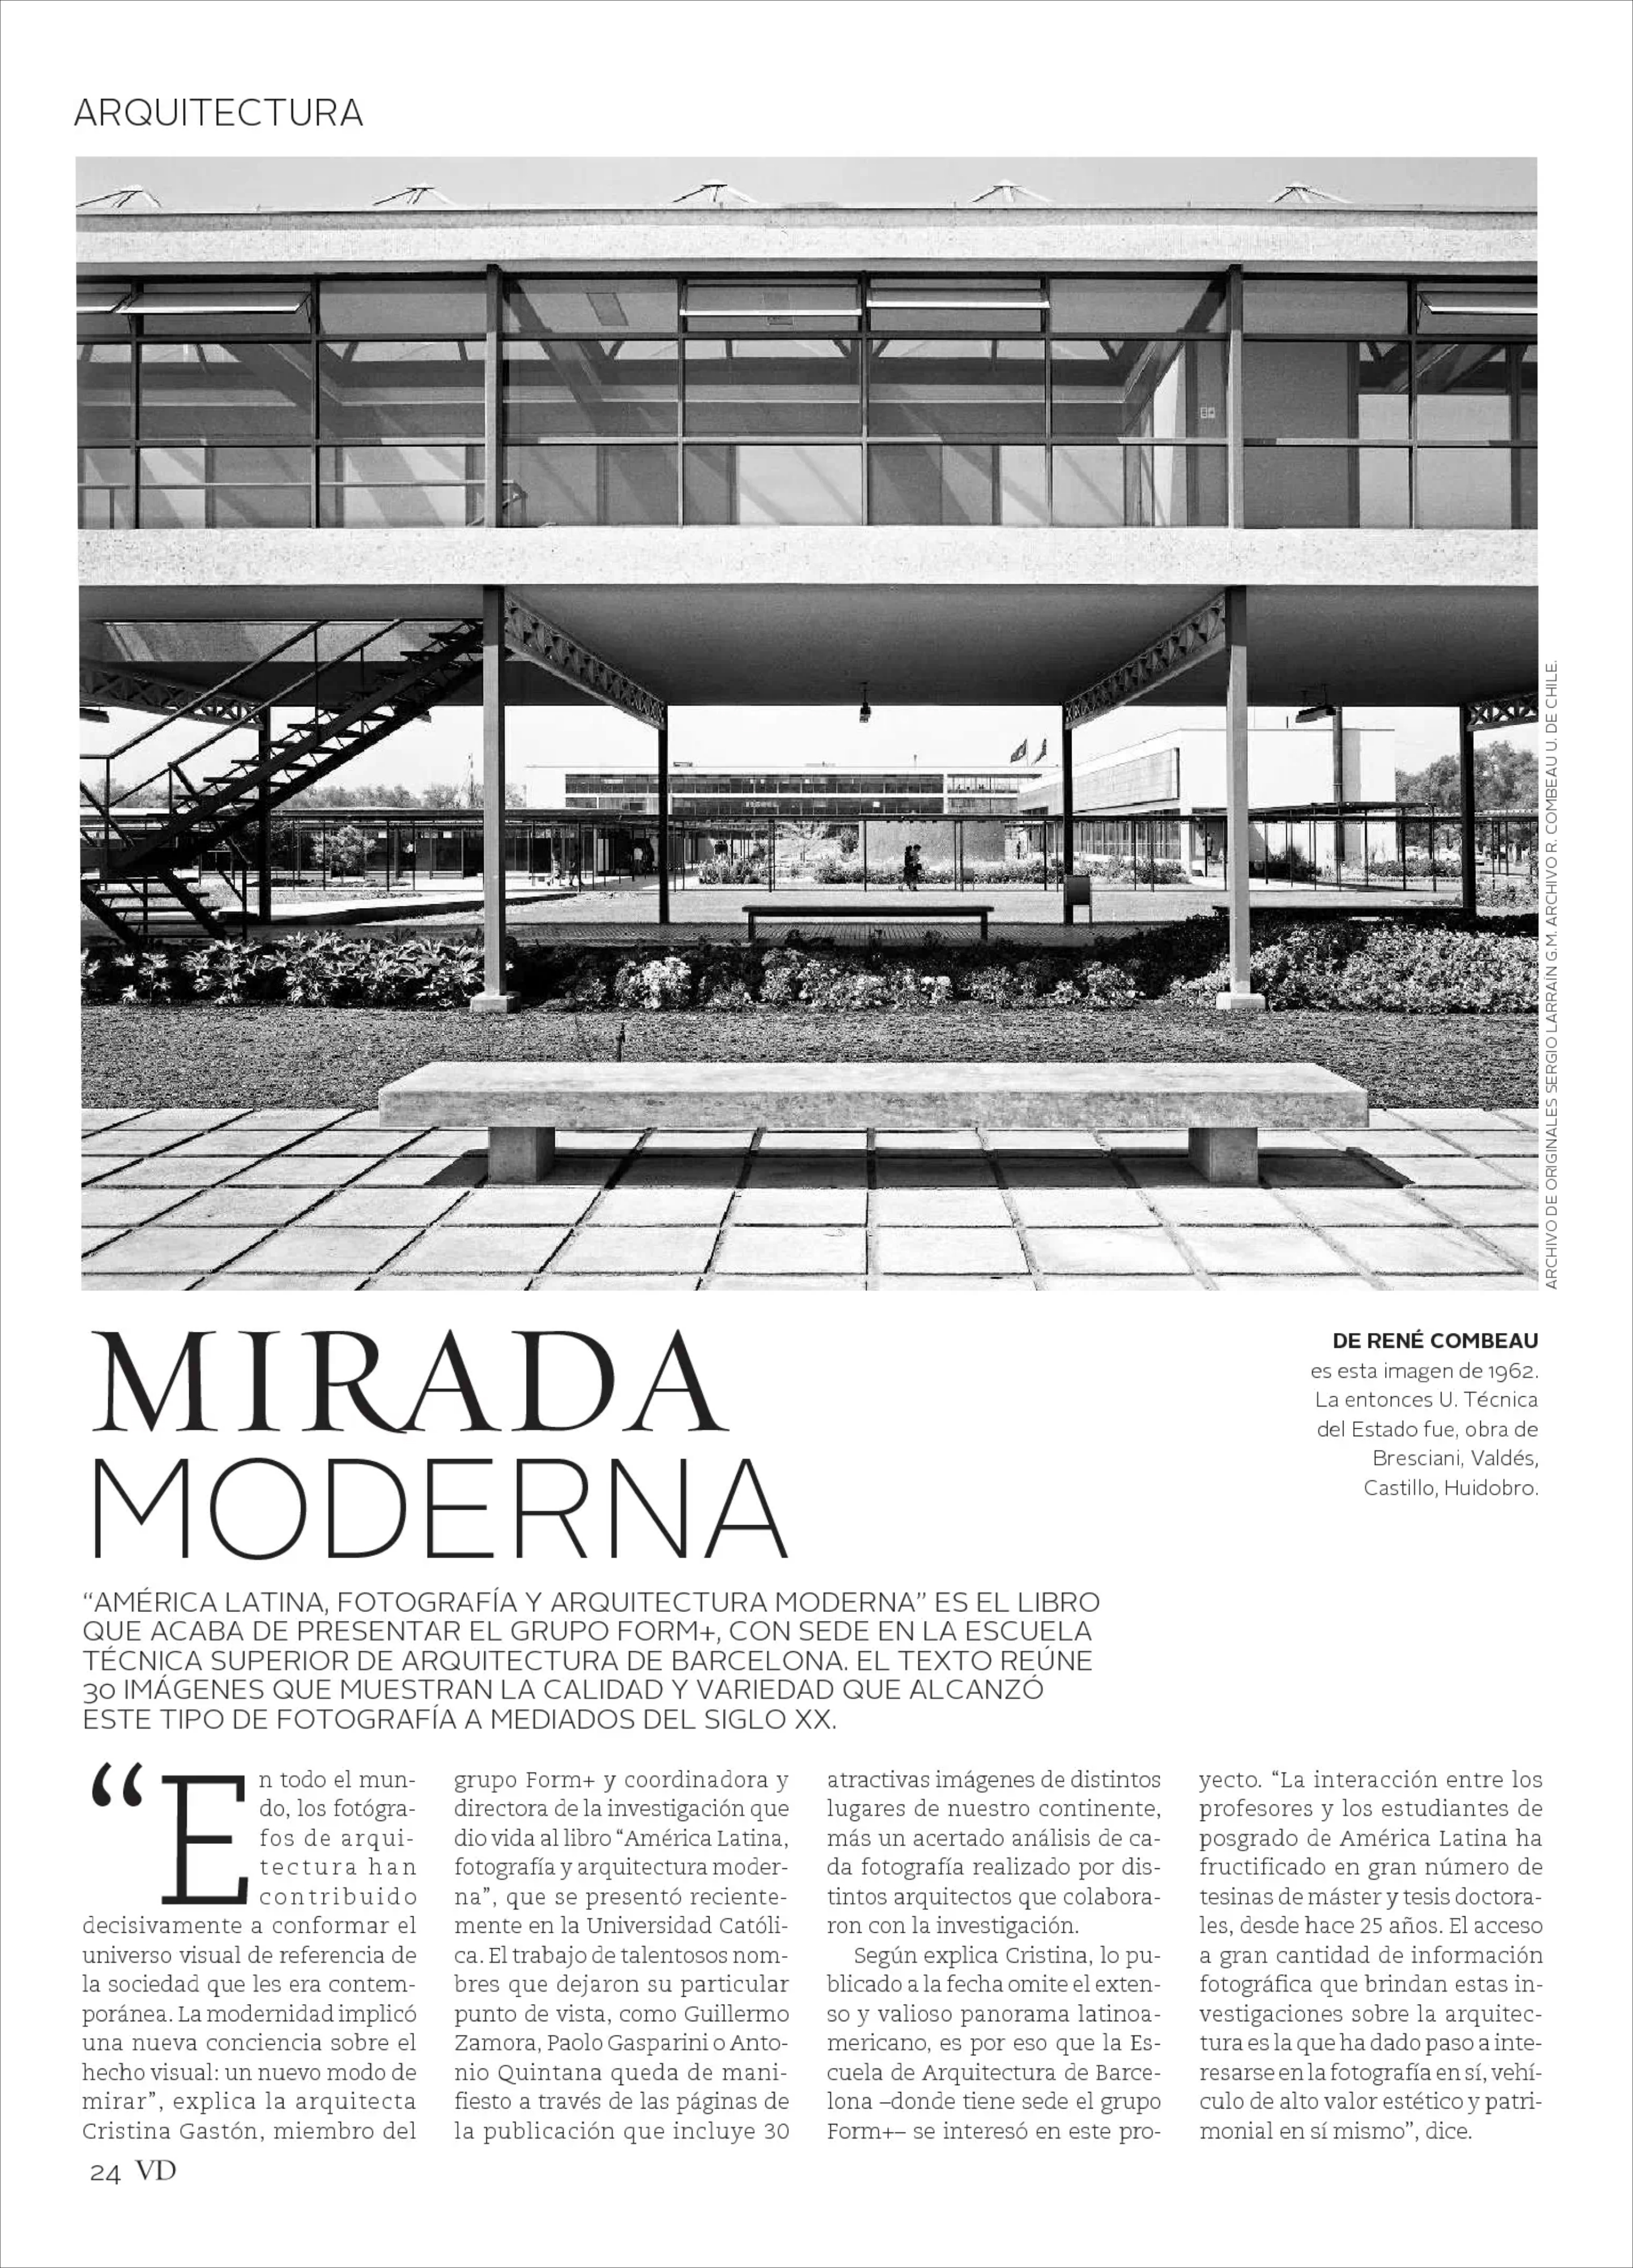 18-10-13_MIRADA_MODERNAREVISTA_VD_1.jpg